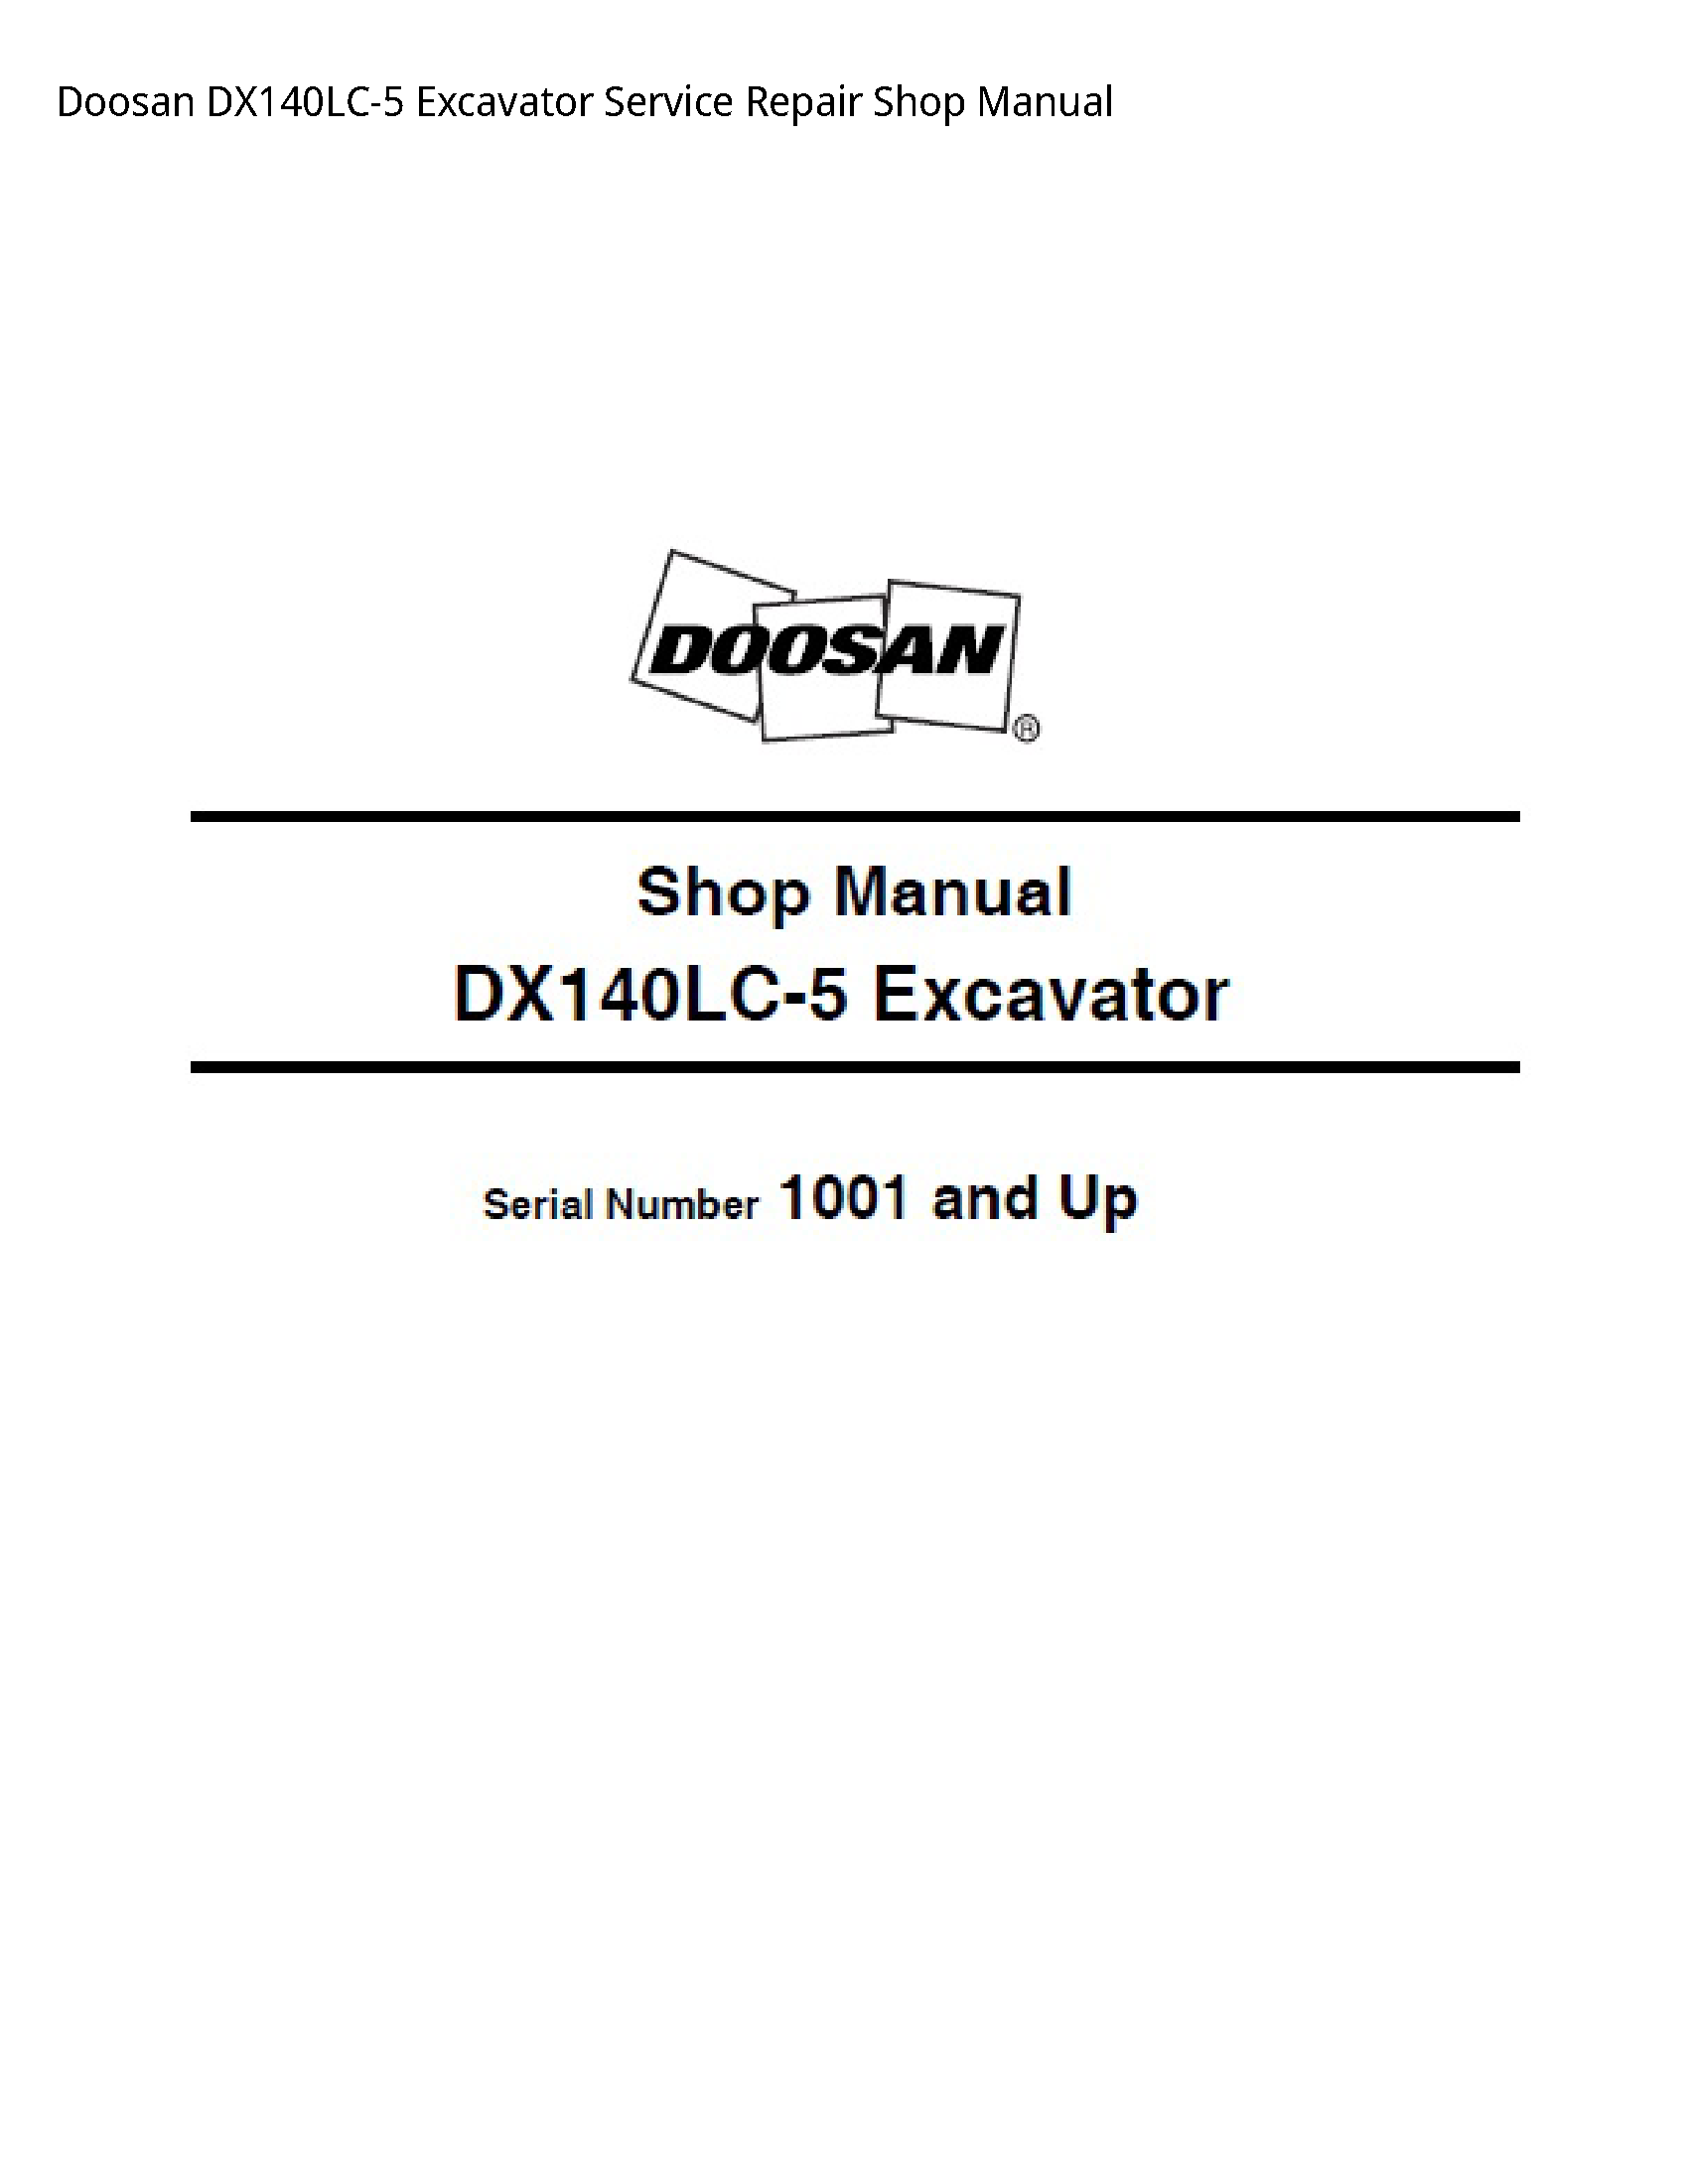 Doosan DX140LC-5 Excavator manual